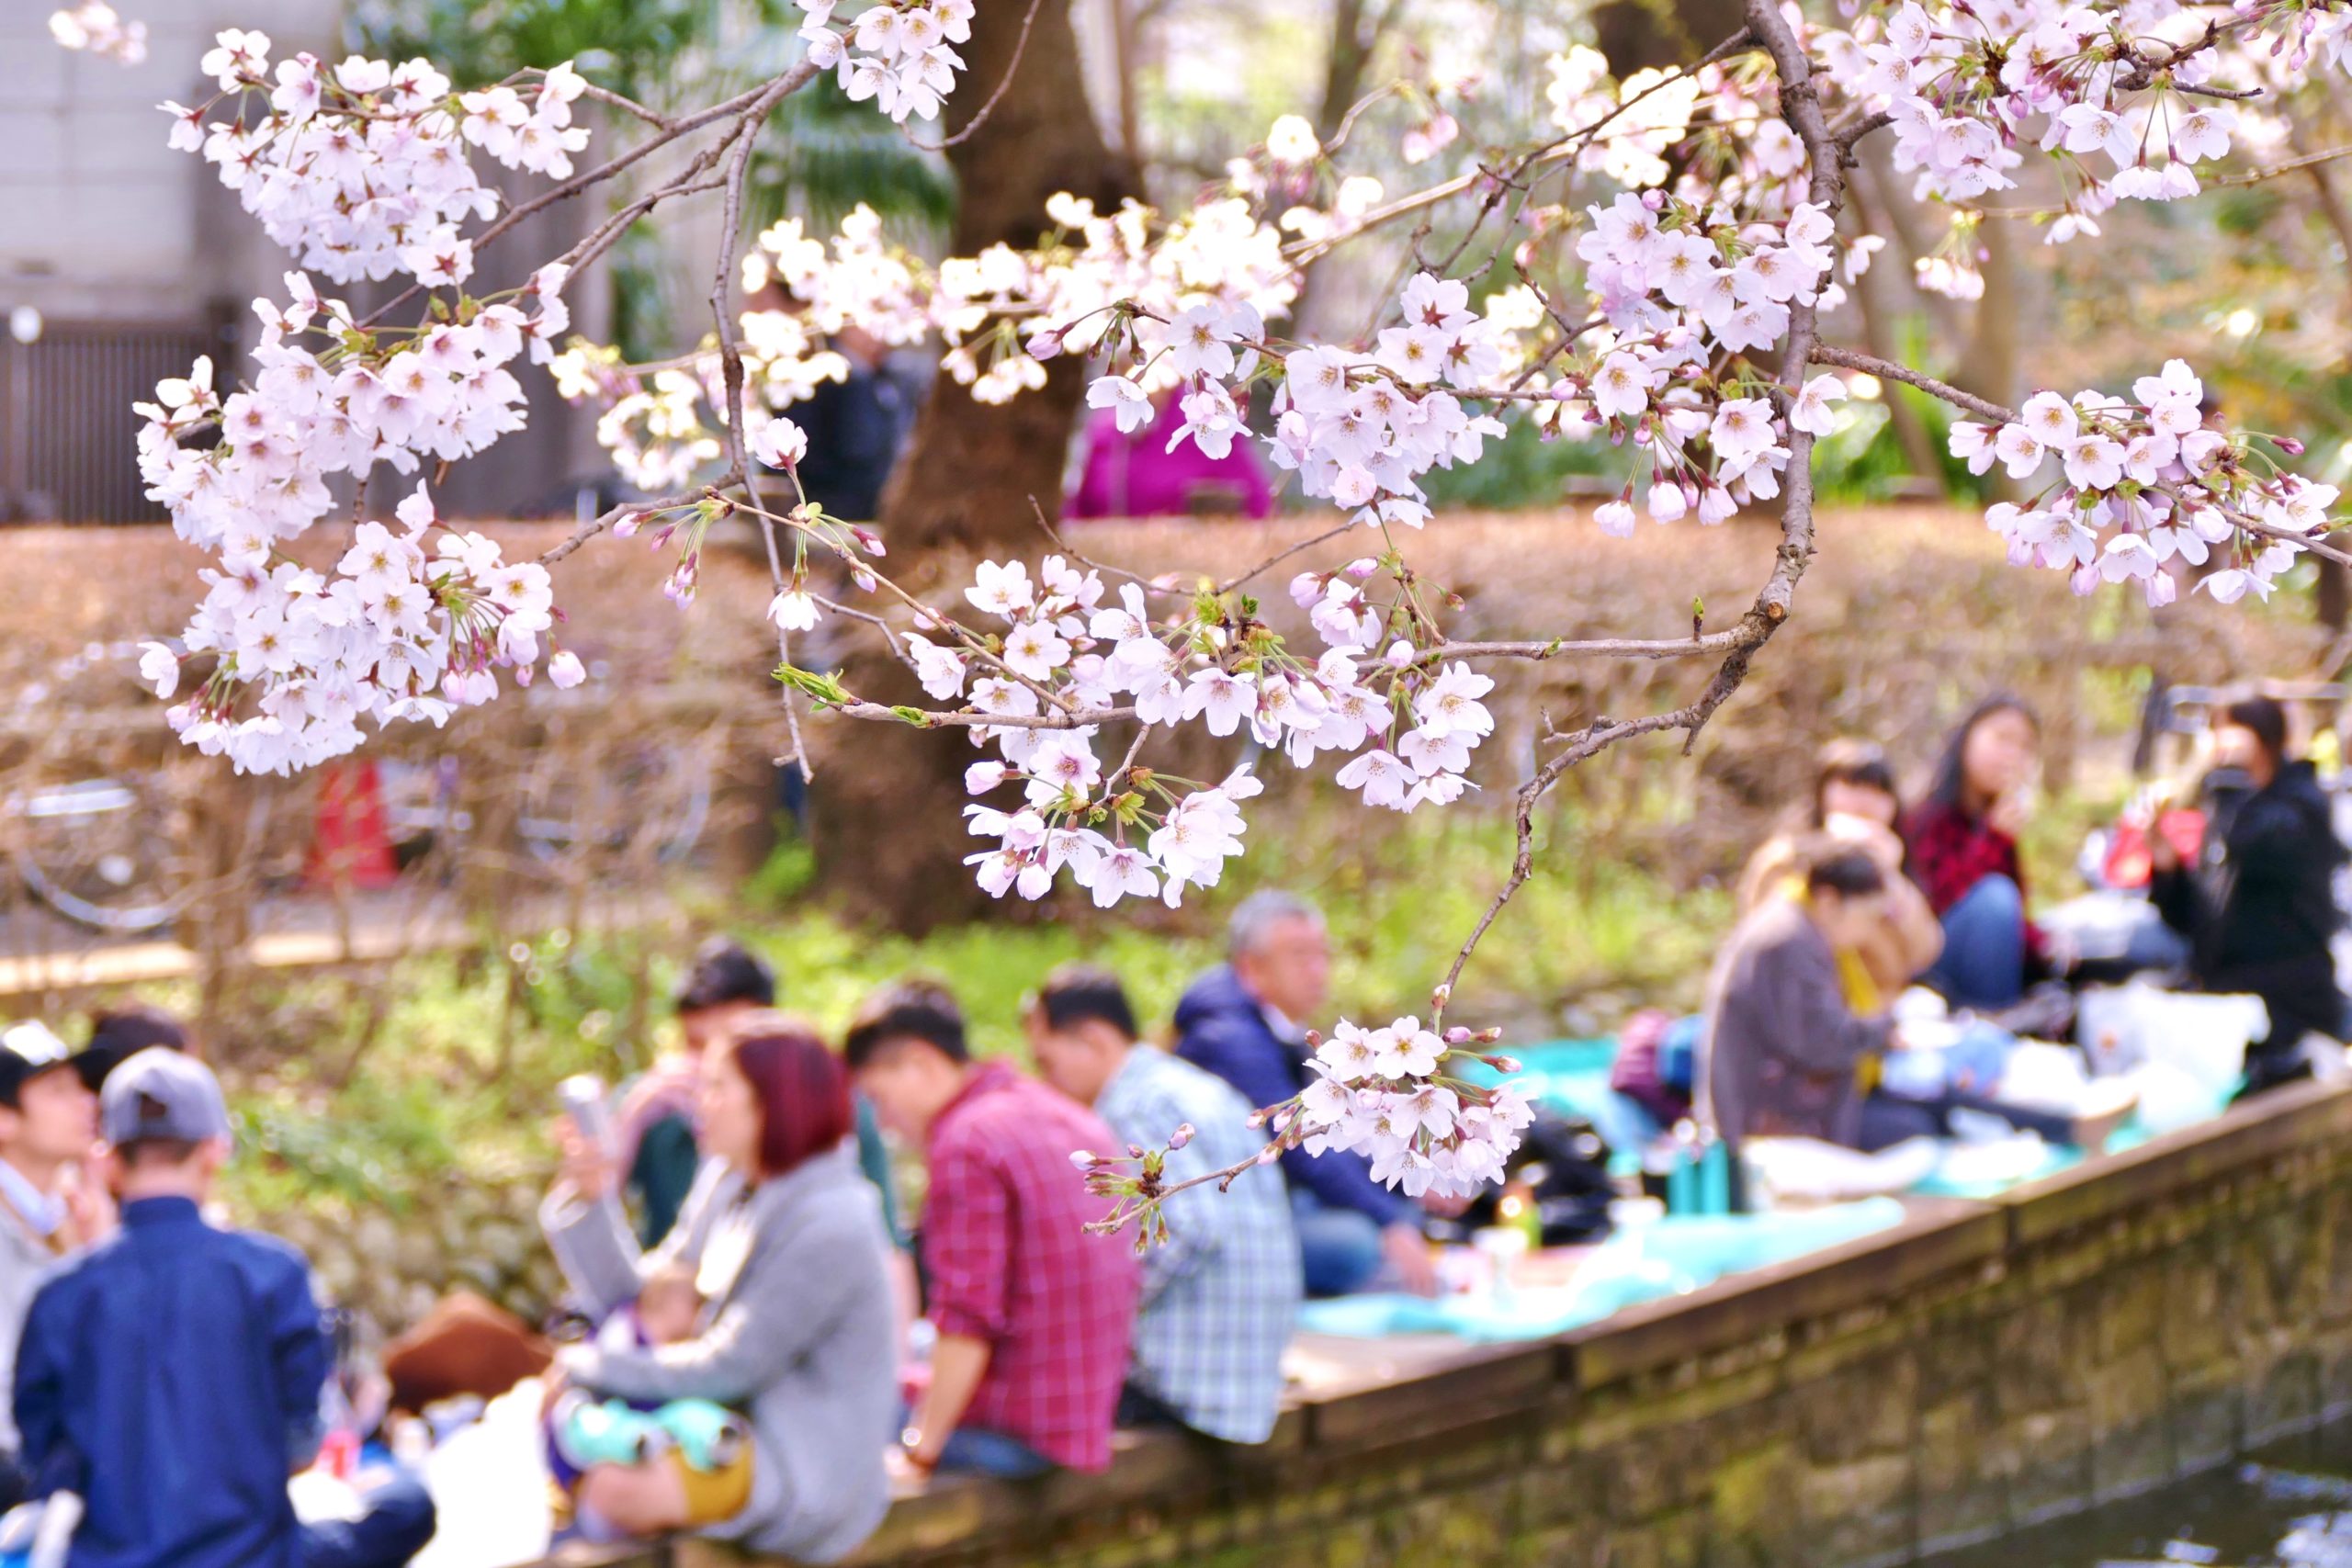 Les cerisiers en fleurs au Japon : où les admirer ?